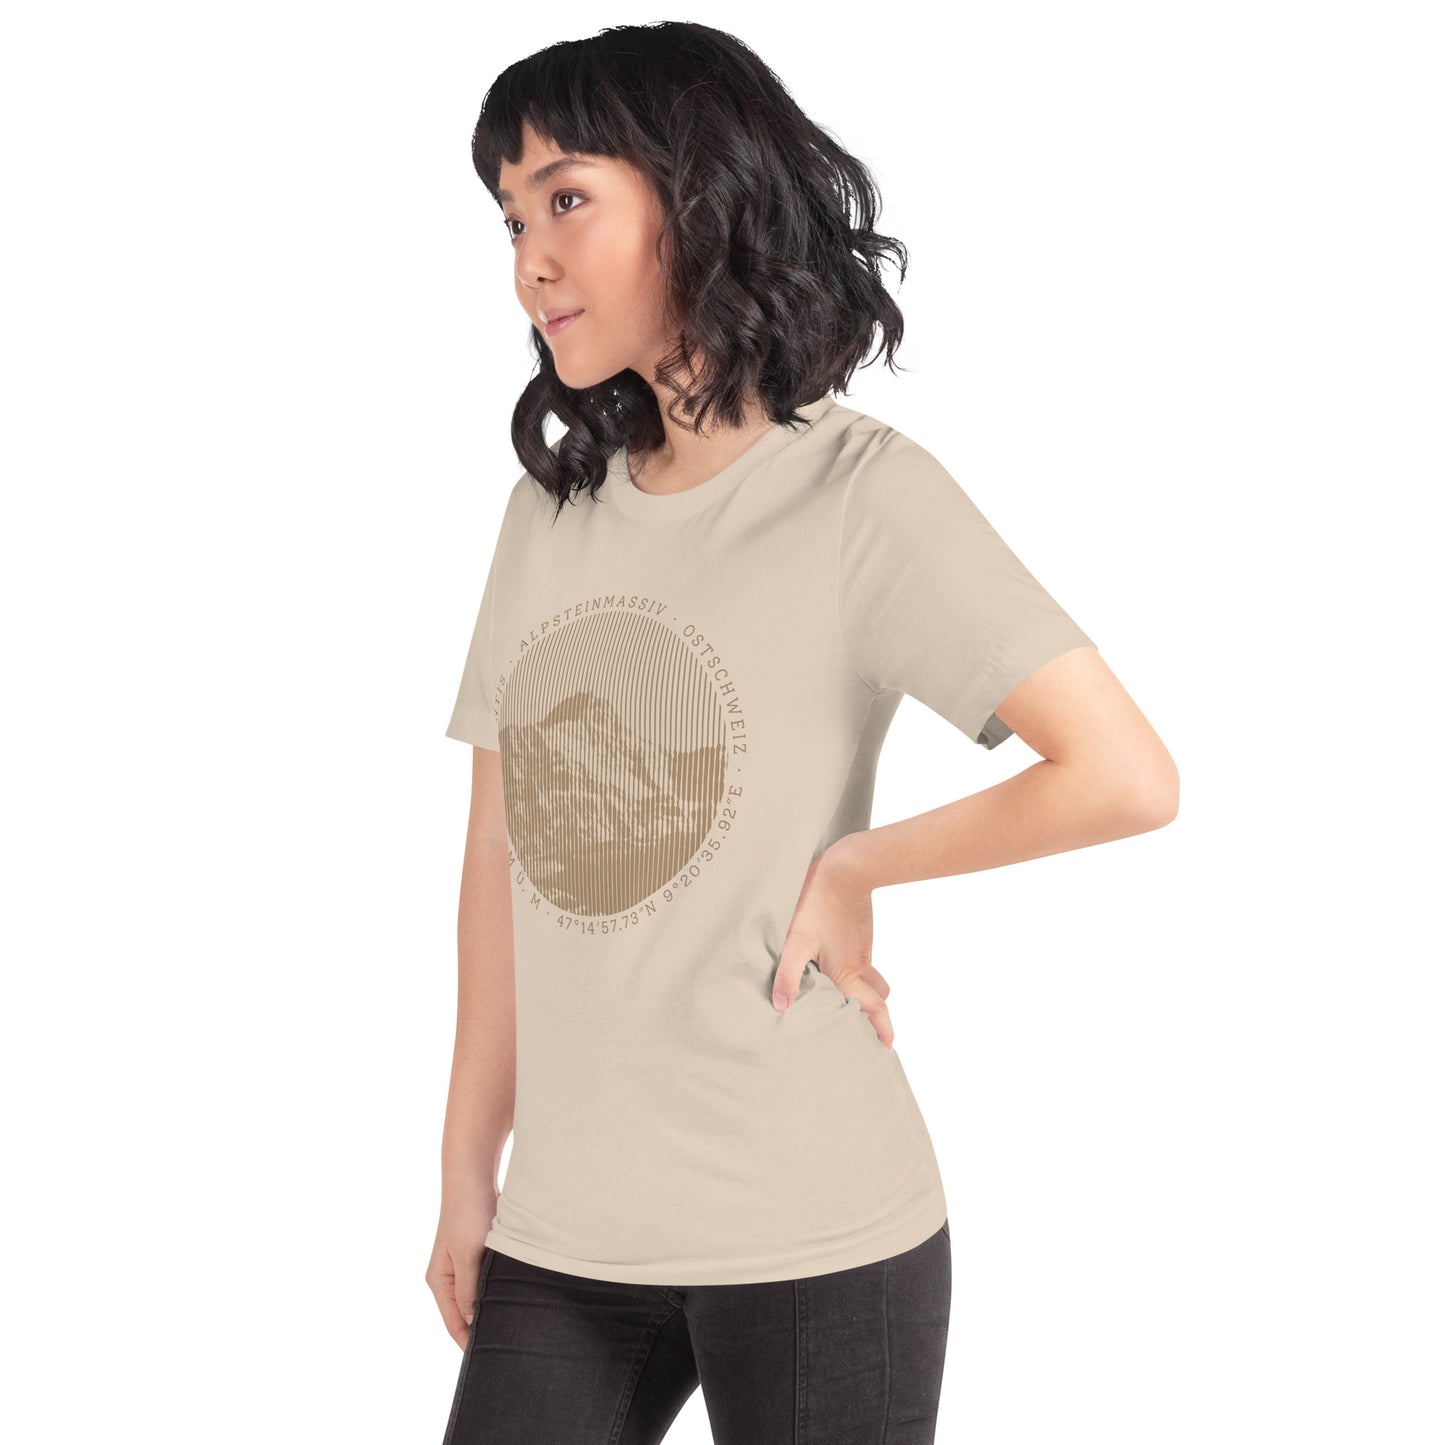 Diese Naturfreundin trägt ein crèmefarbenes Damen T-Shirt von Vallada mit einem Aufdruck des Säntis-Gipfels. Dieses T-Shirt ist ein Ausdruck ihres Enthusiasmus für die Region des Alpsteins.